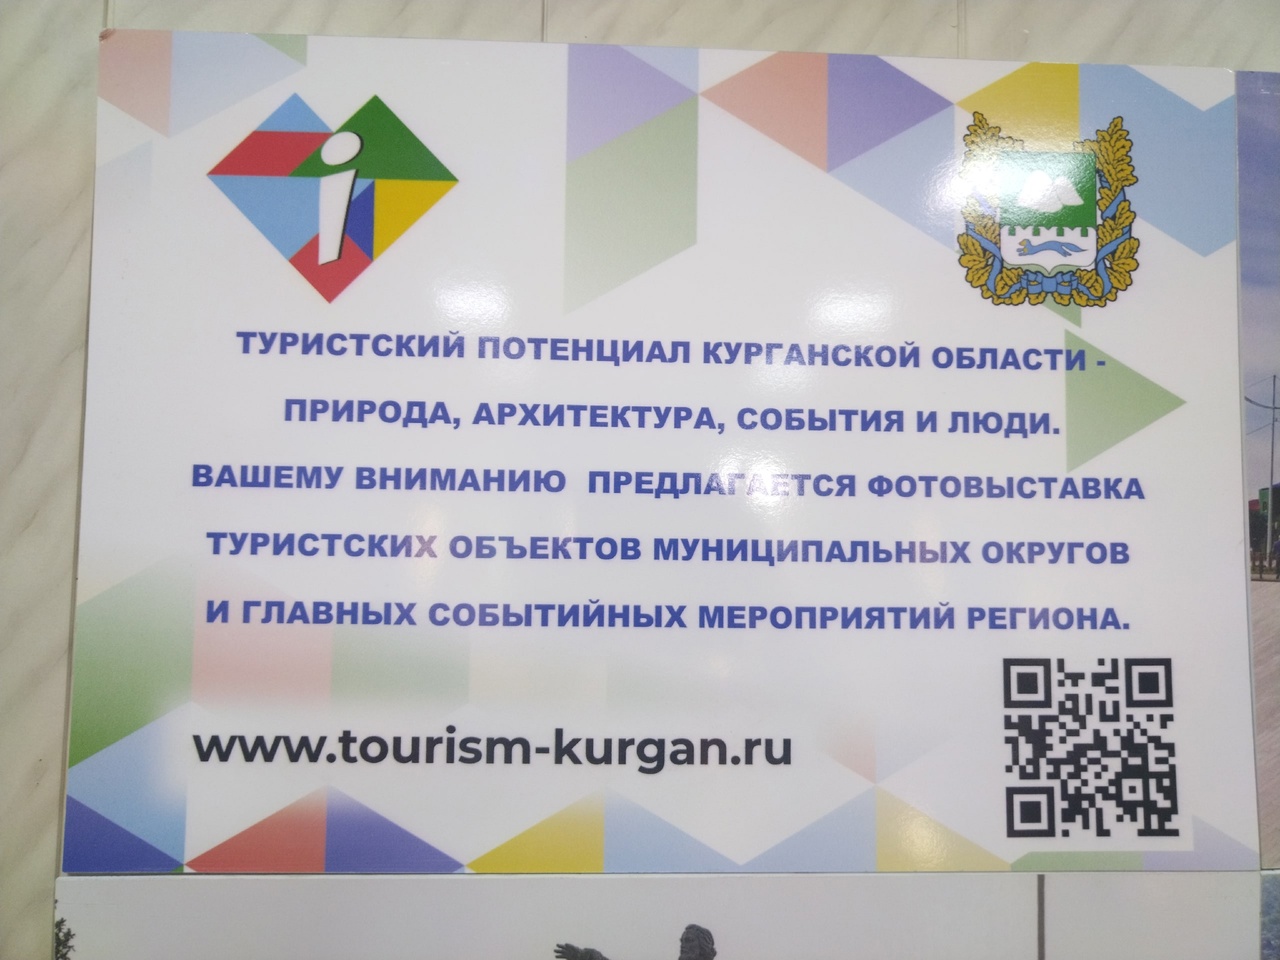 Фотовыставка туристских объектов муниципальных округов и главных событийных мероприятий региона.